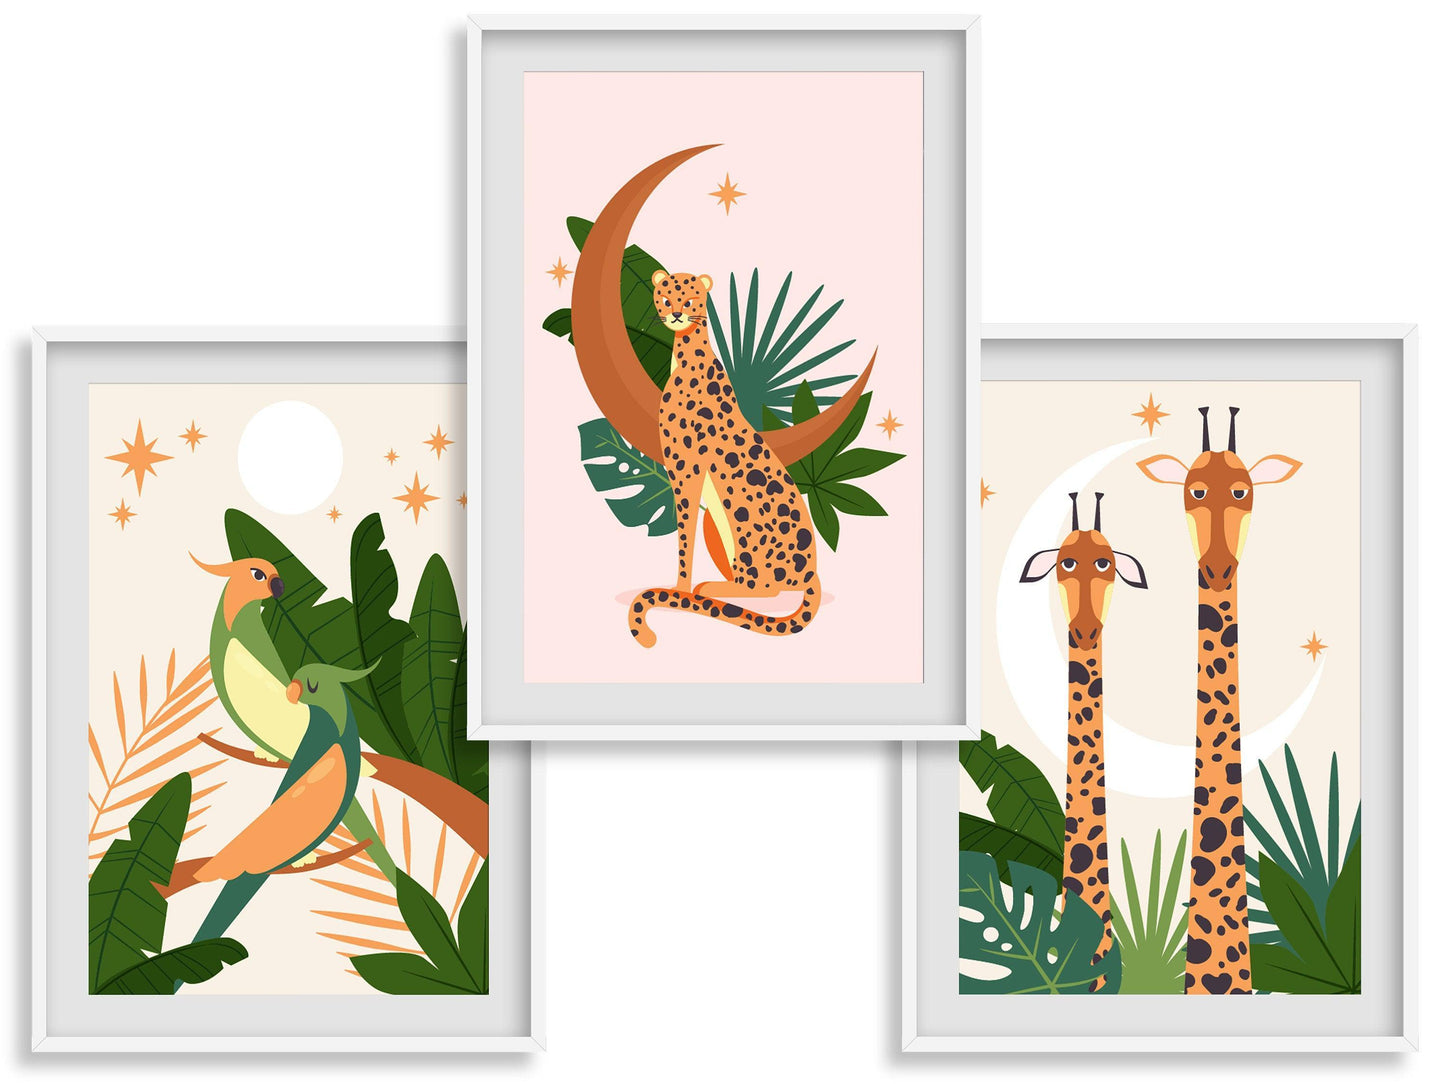 Affiche Léopard Éléphant Oiseau - A4 A3 - Décoration jungle savane - Posters design illustration safari - Deco salon chambre Affiche enfant - Imagine.affiche